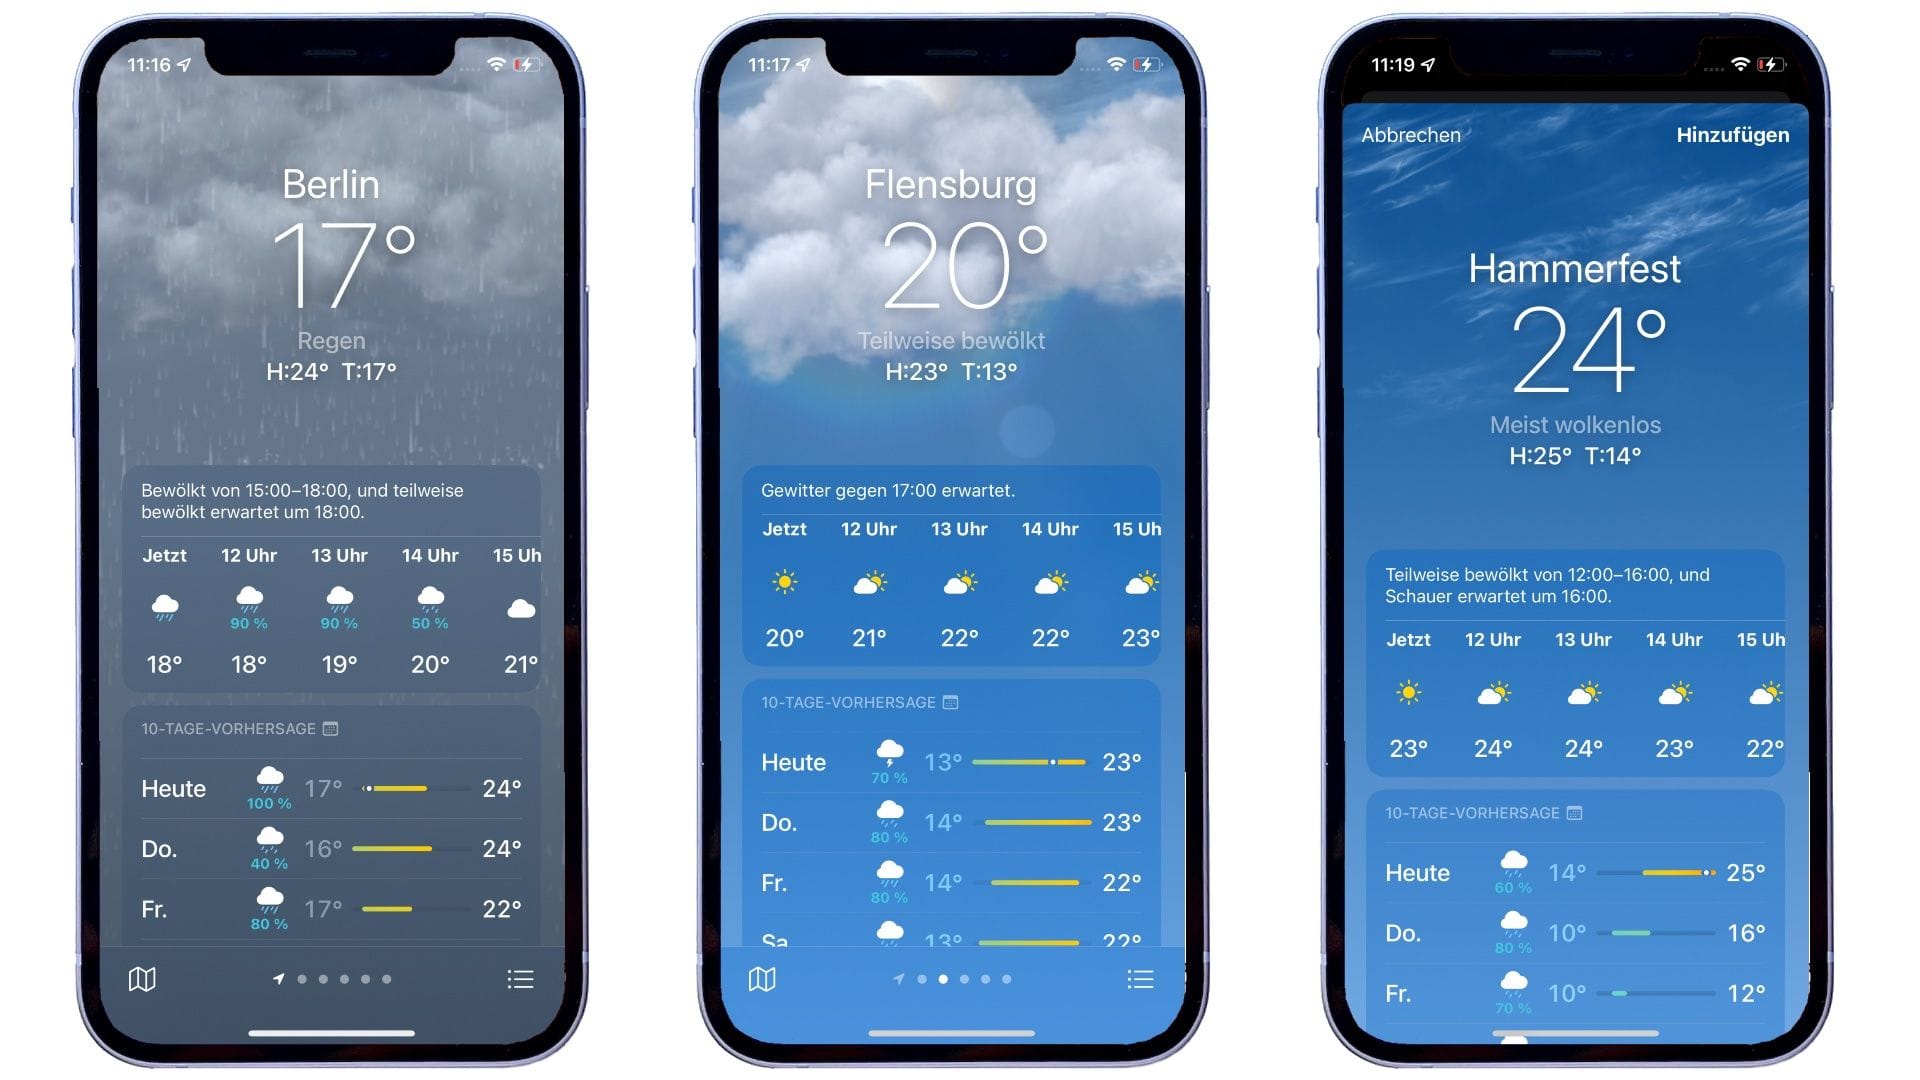 Die Wetter-App zeigt die jeweiligen Wetterlagen jetzt auch hübsch animiert an. Laut Apple soll es hier tausende unterschiedliche Darstellungsvarianten geben. Sogar kleine Details wie der von der Wetterkachel abprallende Regentropfen wurden integriert.